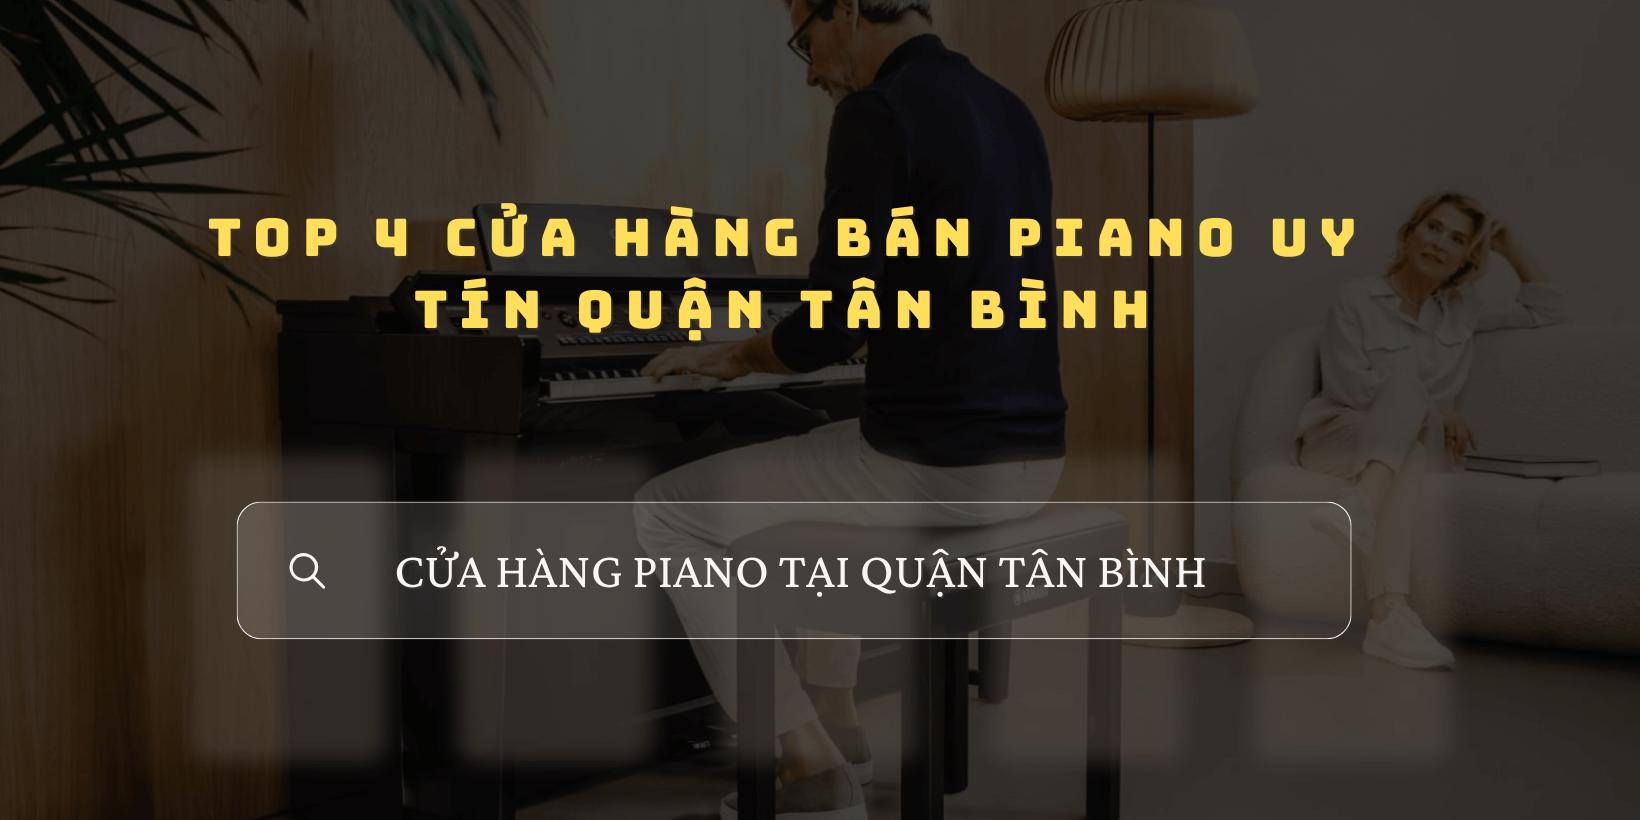 Cửa hàng bán đàn piano uy tín tại quận Tân Bình